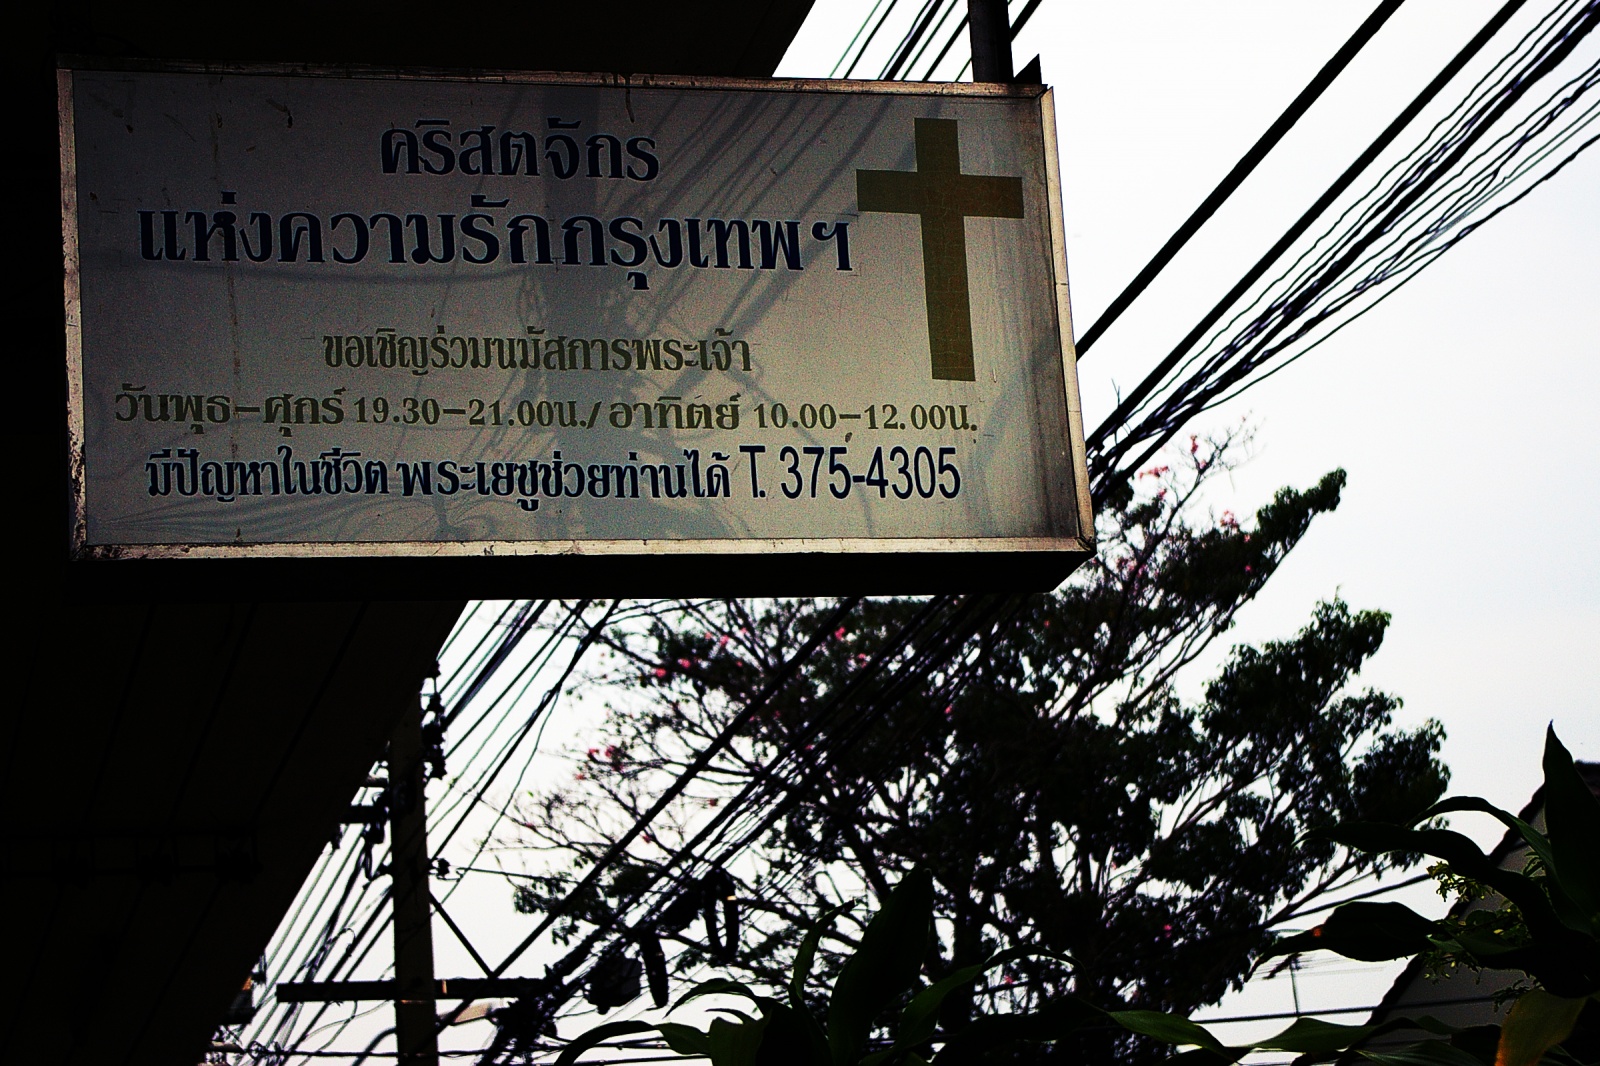 9996.jpg : 2006년 태국 단기선교